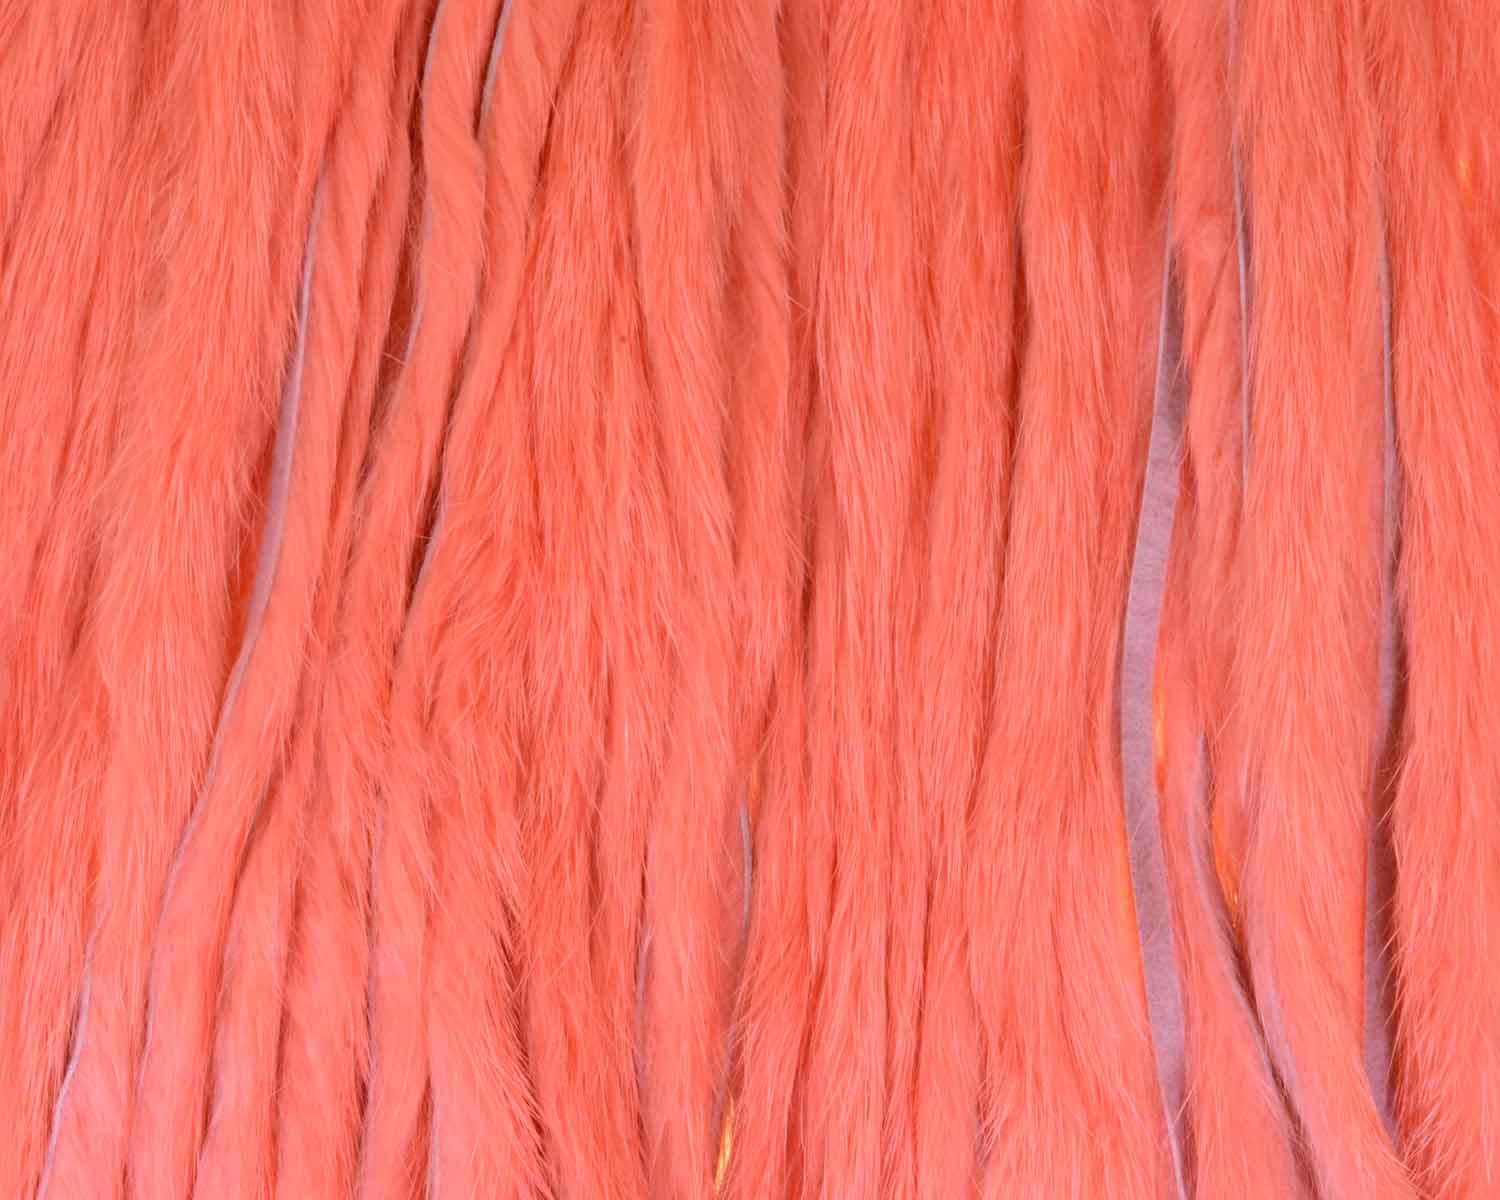 Shrimp pink